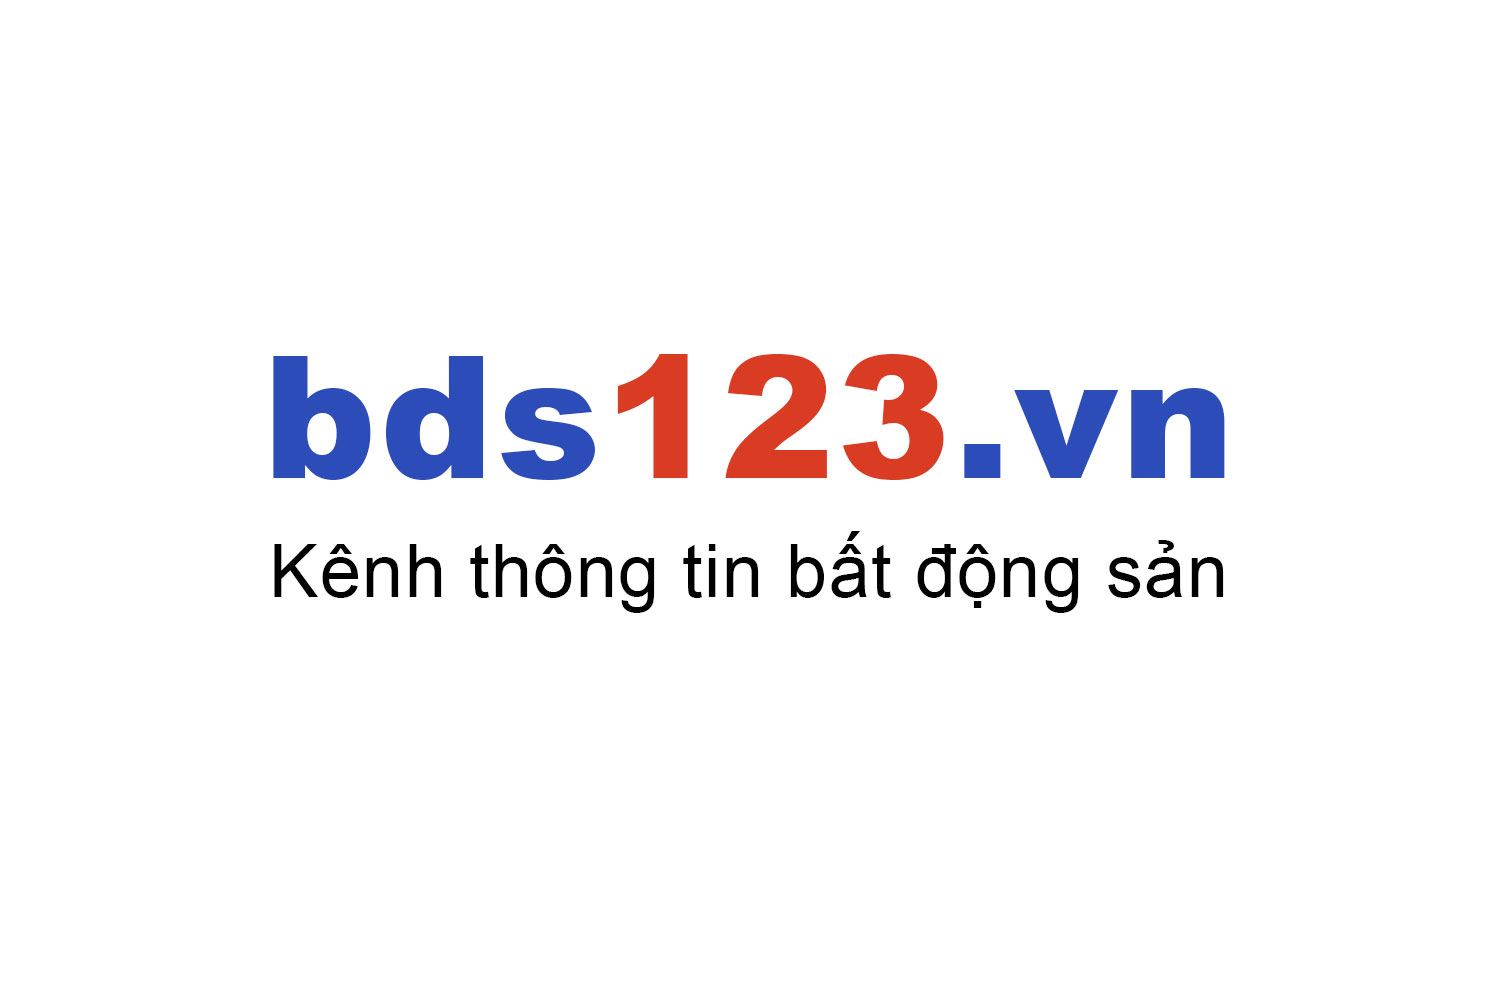 Mua bán căn hộ The Light Phú Yên ưu đãi giá tốt T10/2022 - Bds123.vn